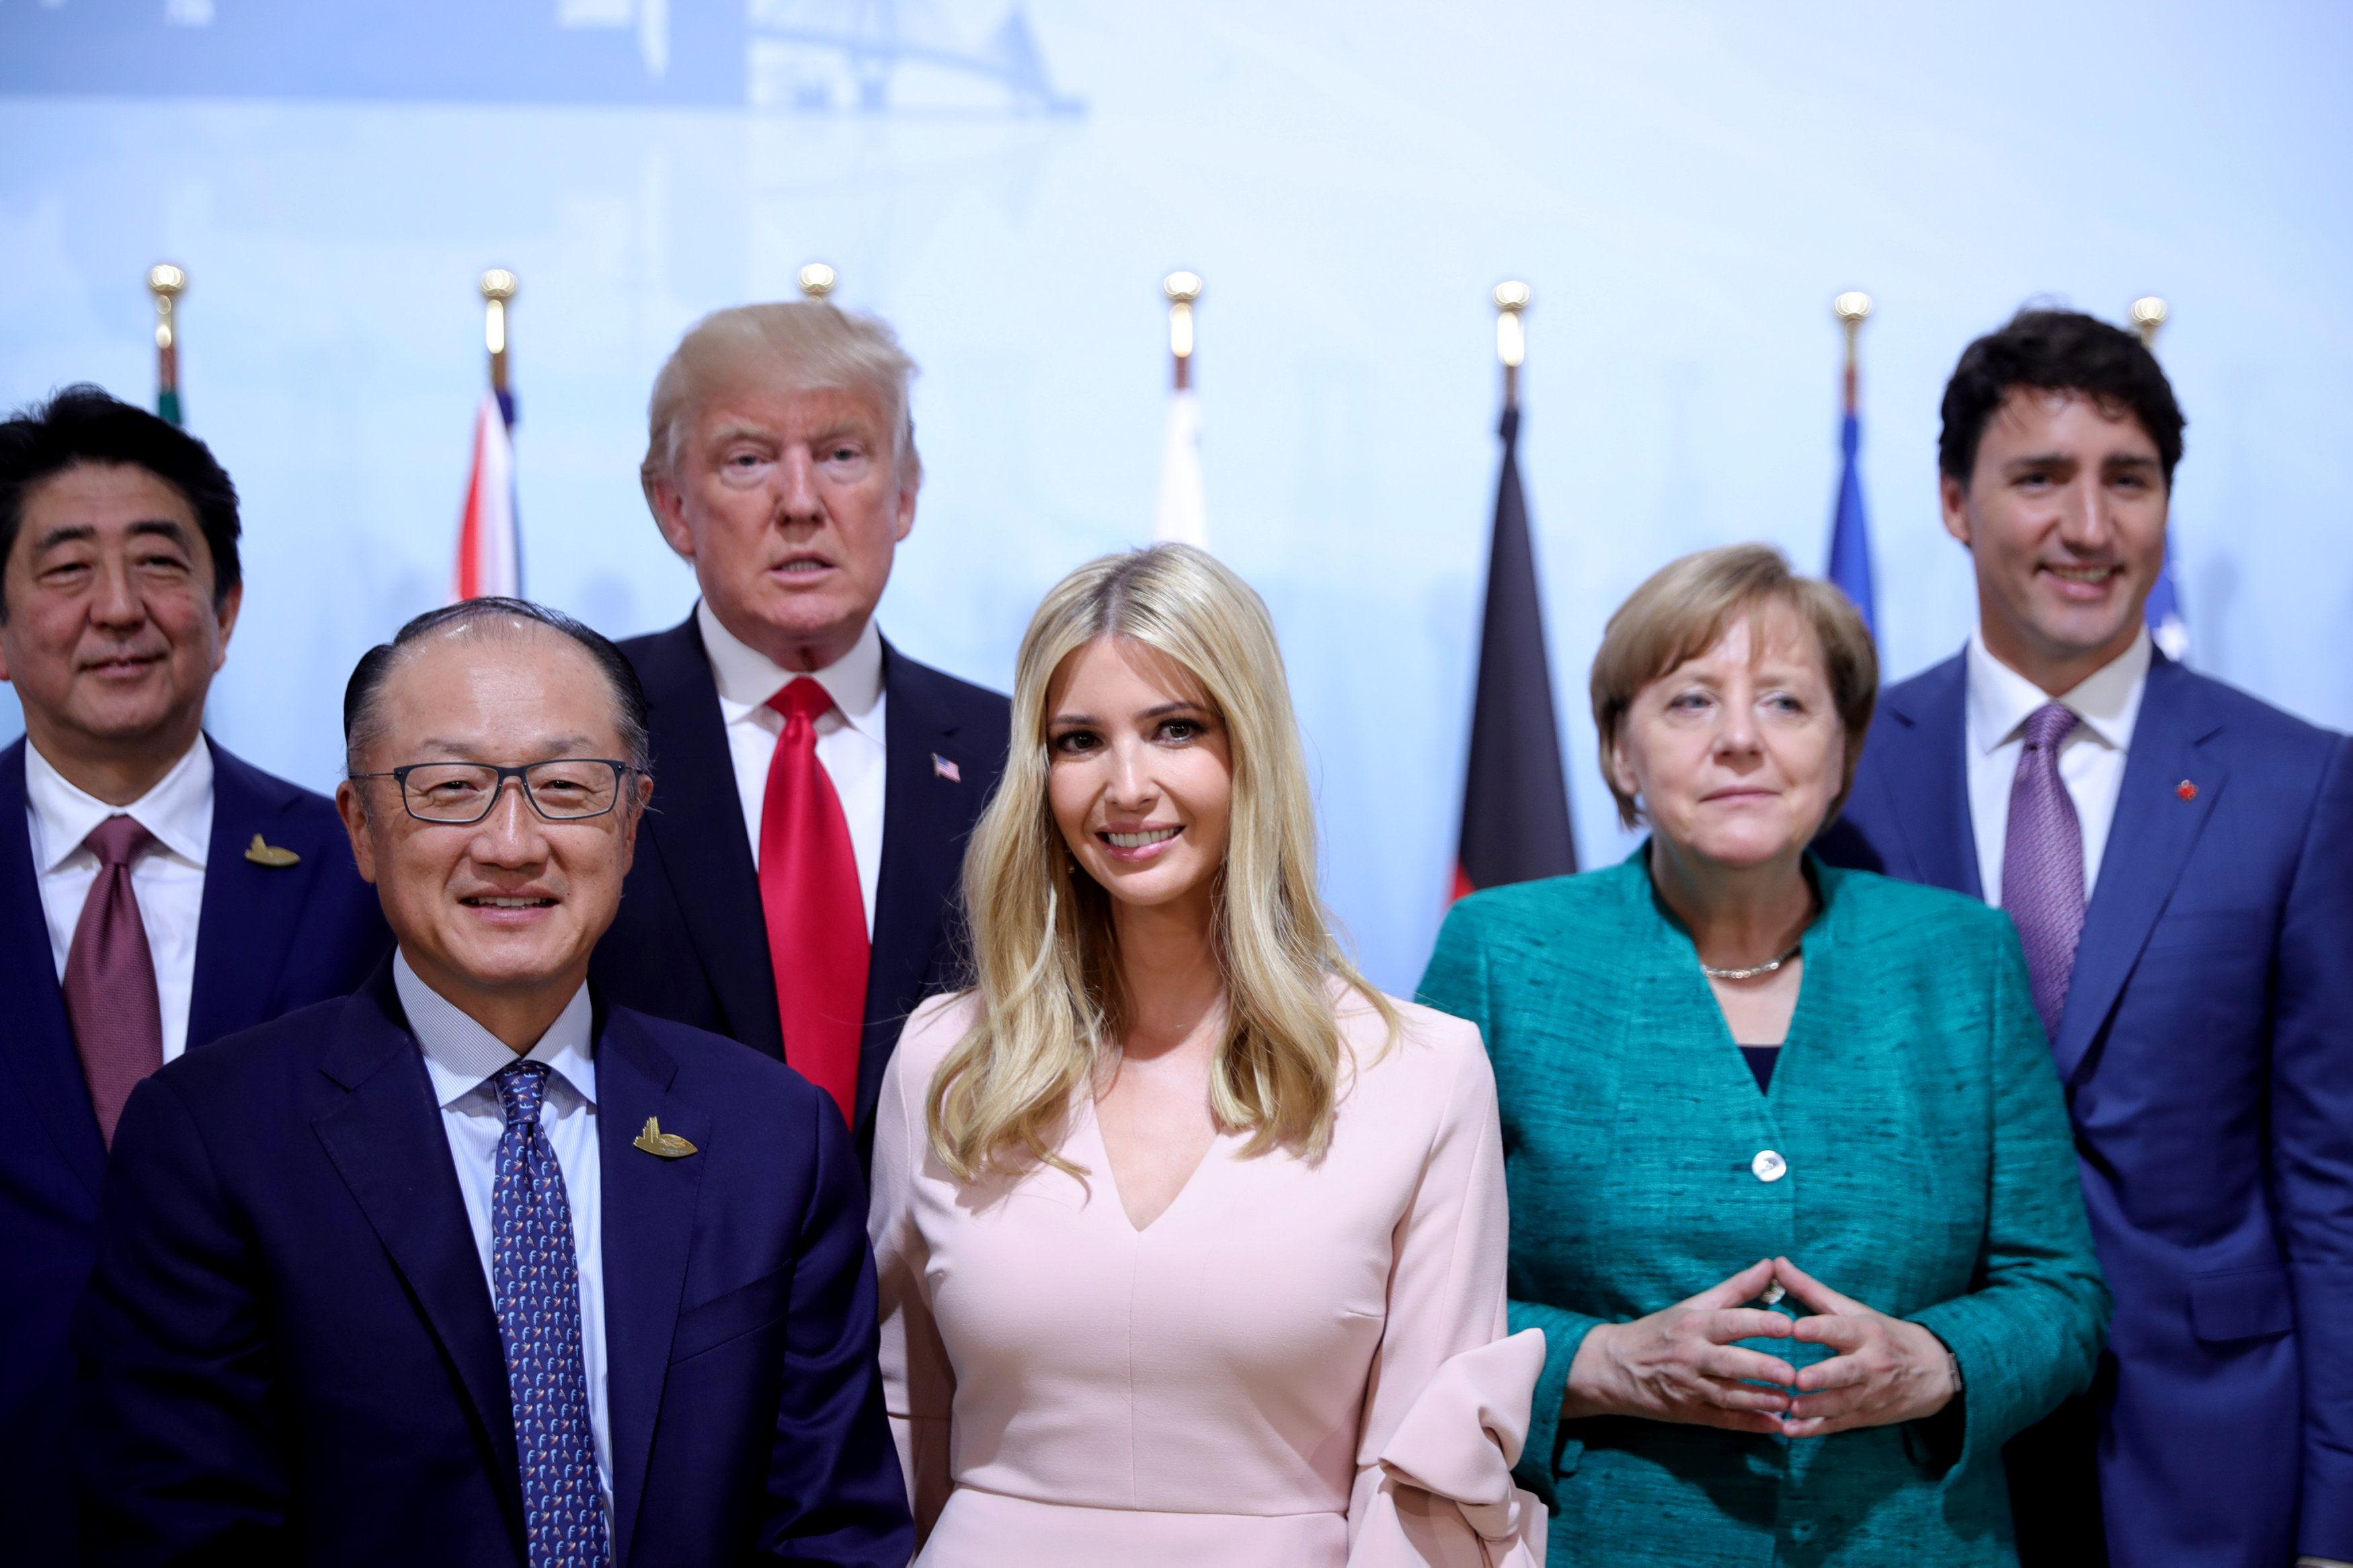 伊万卡（中）在G20峰会上抢镜头，站在其身后的默克尔看似一脸不屑。-路透社-